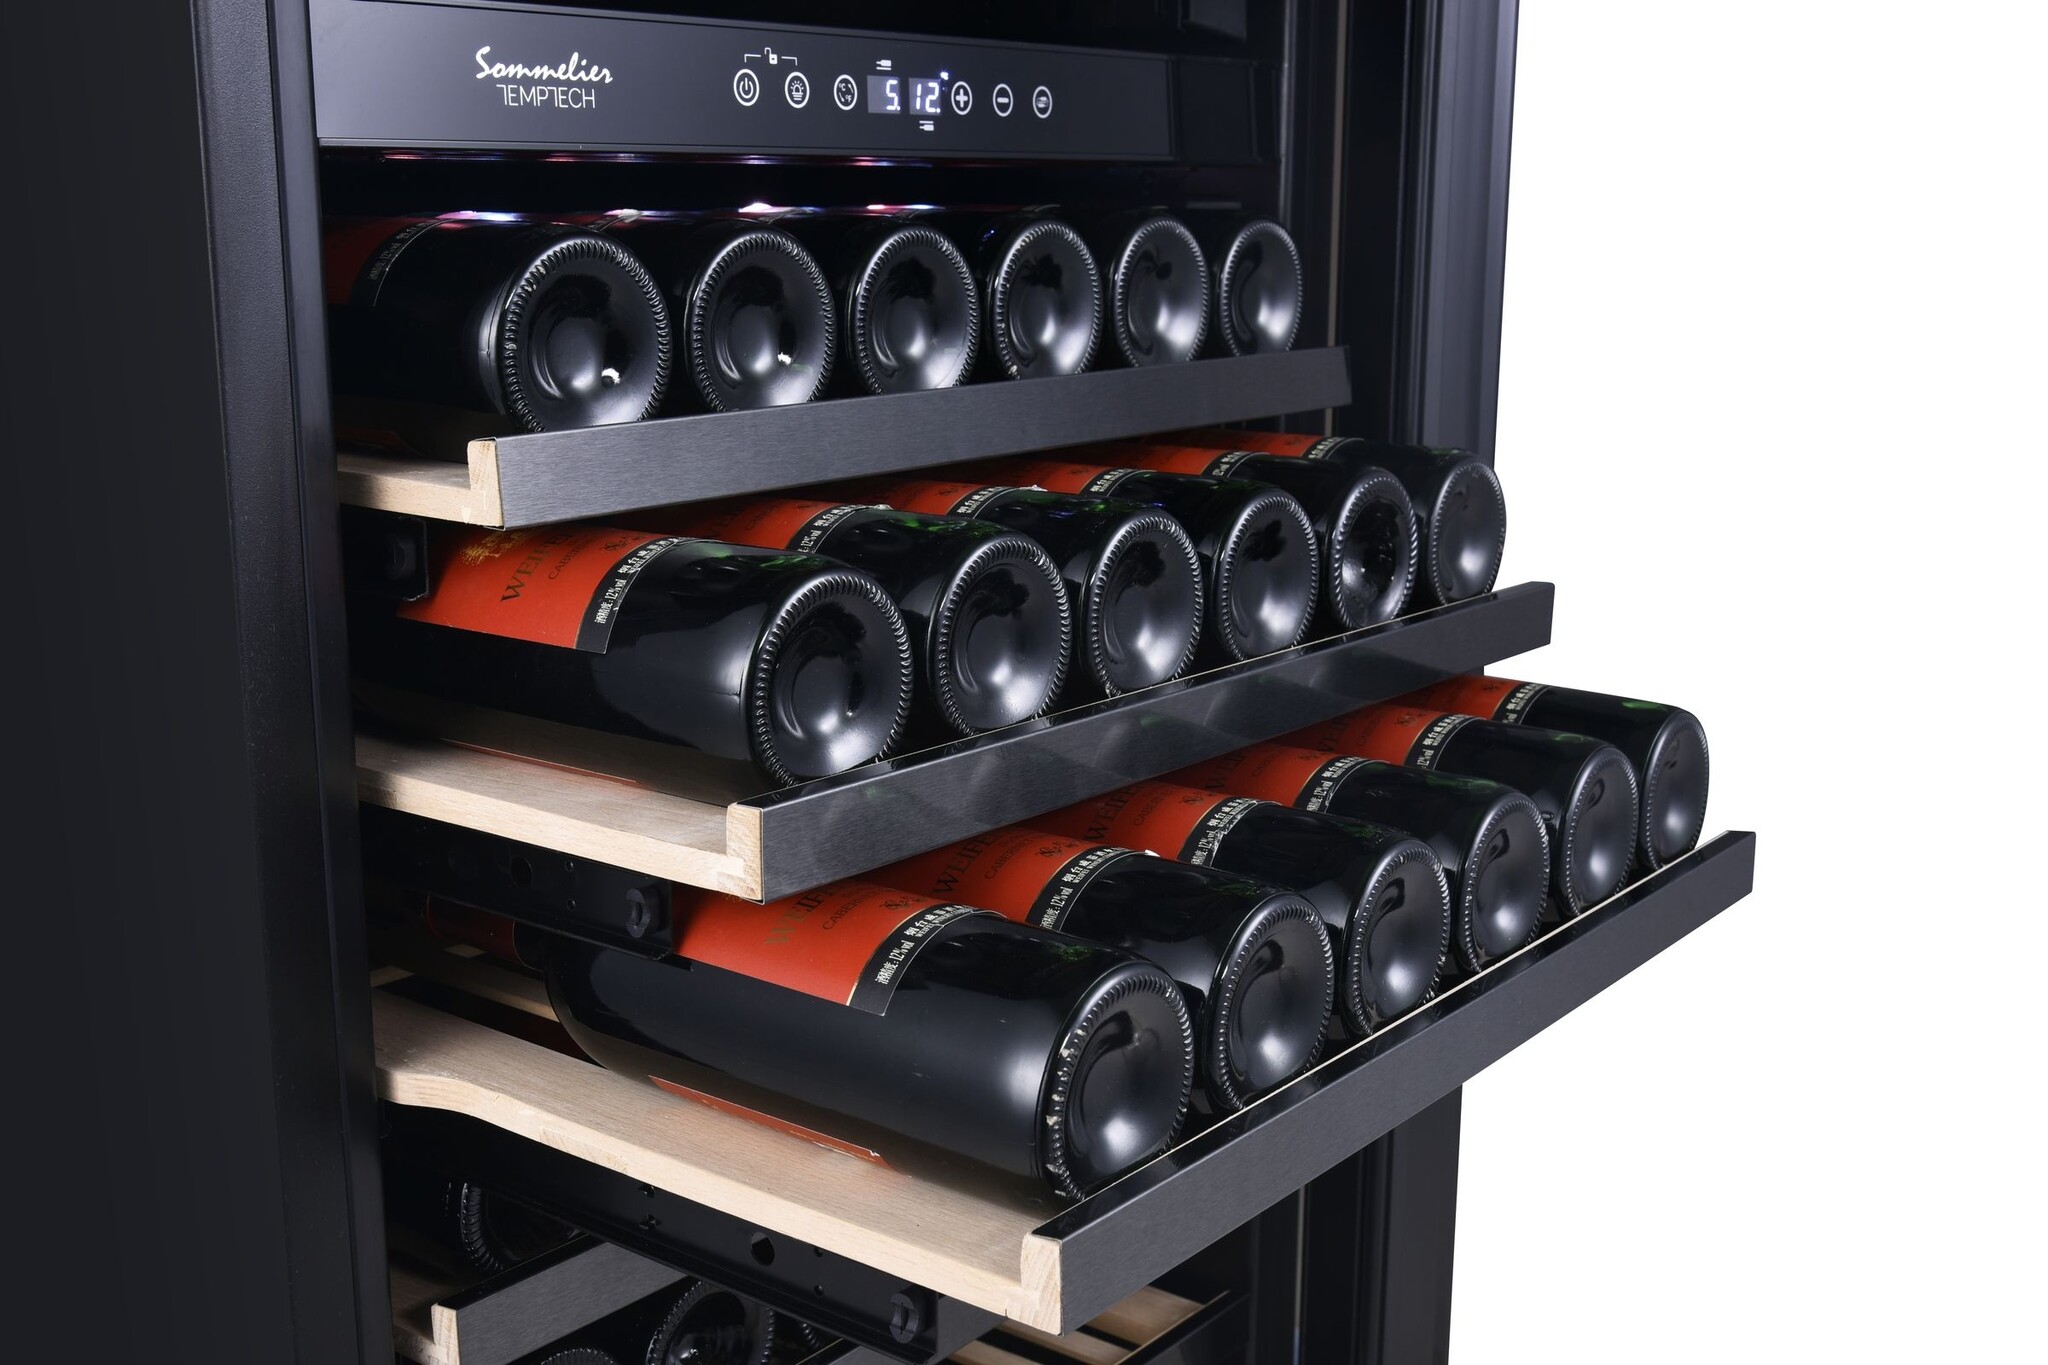 Temptech Sommelier Weinkühlschrank mit 2 Zonen für 166 Flaschen